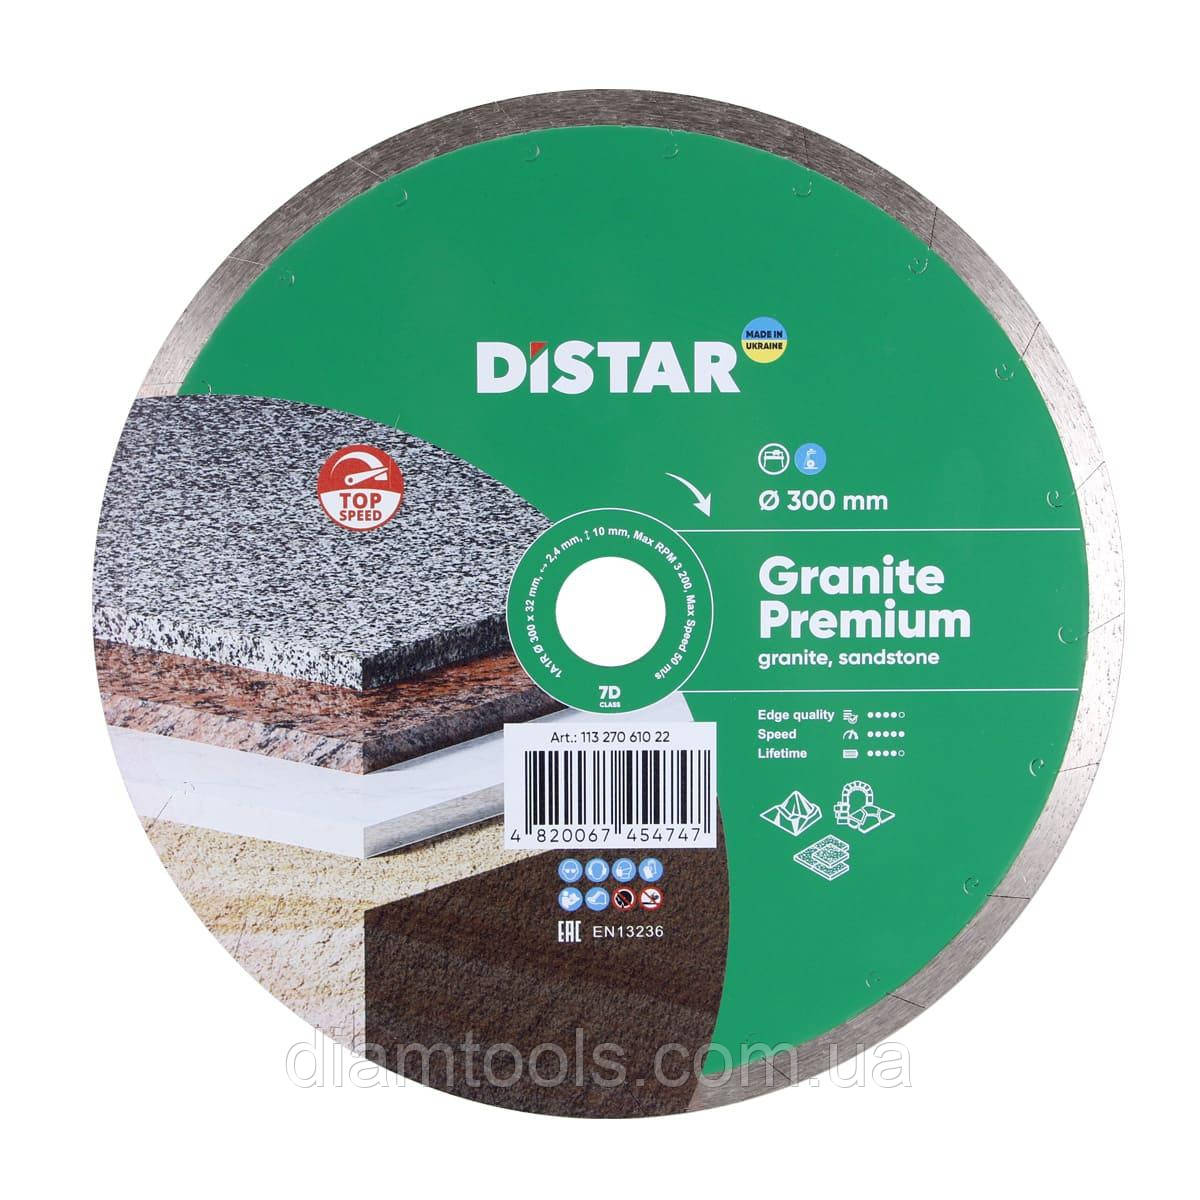 Круг алмазний відрізний по граніту і мрамору Distar Granite Premium 300x2.4x10x32